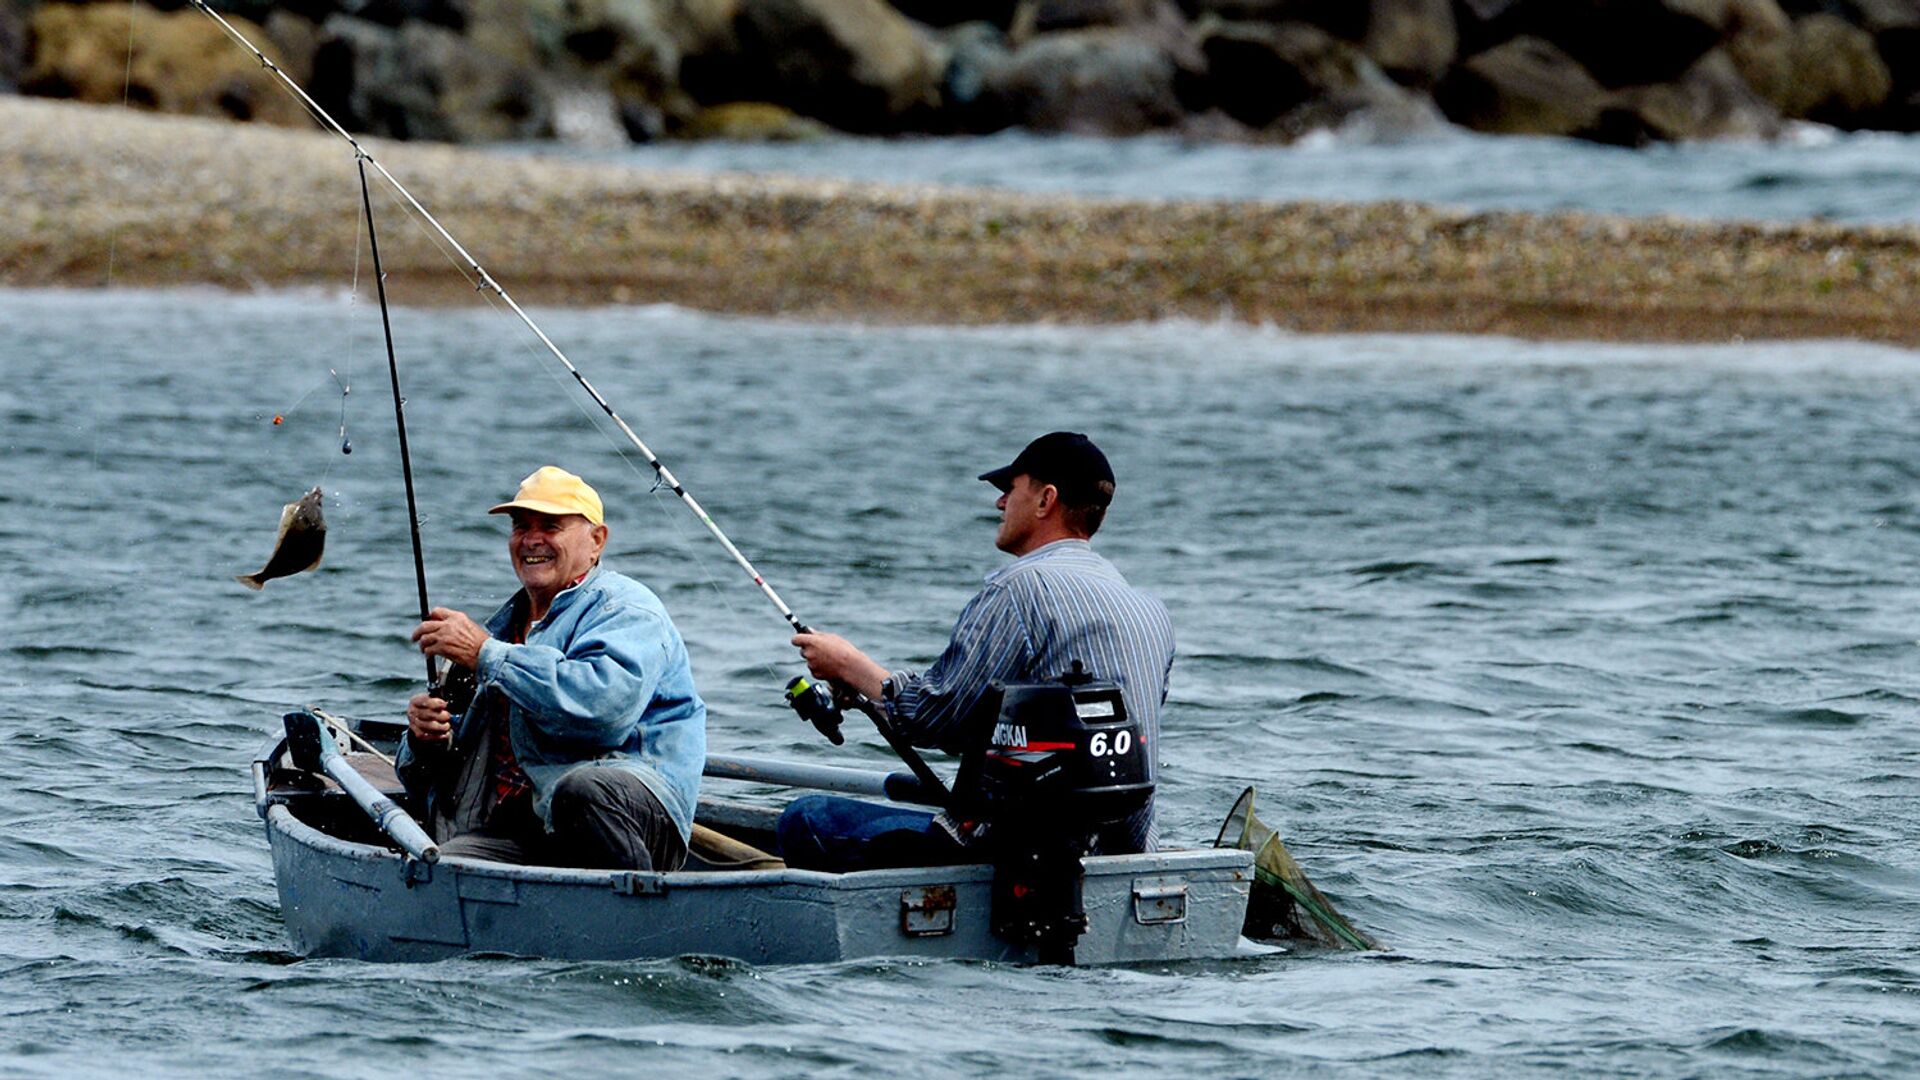 Как ловить на фидер с лодки на озере - советы рыболовам